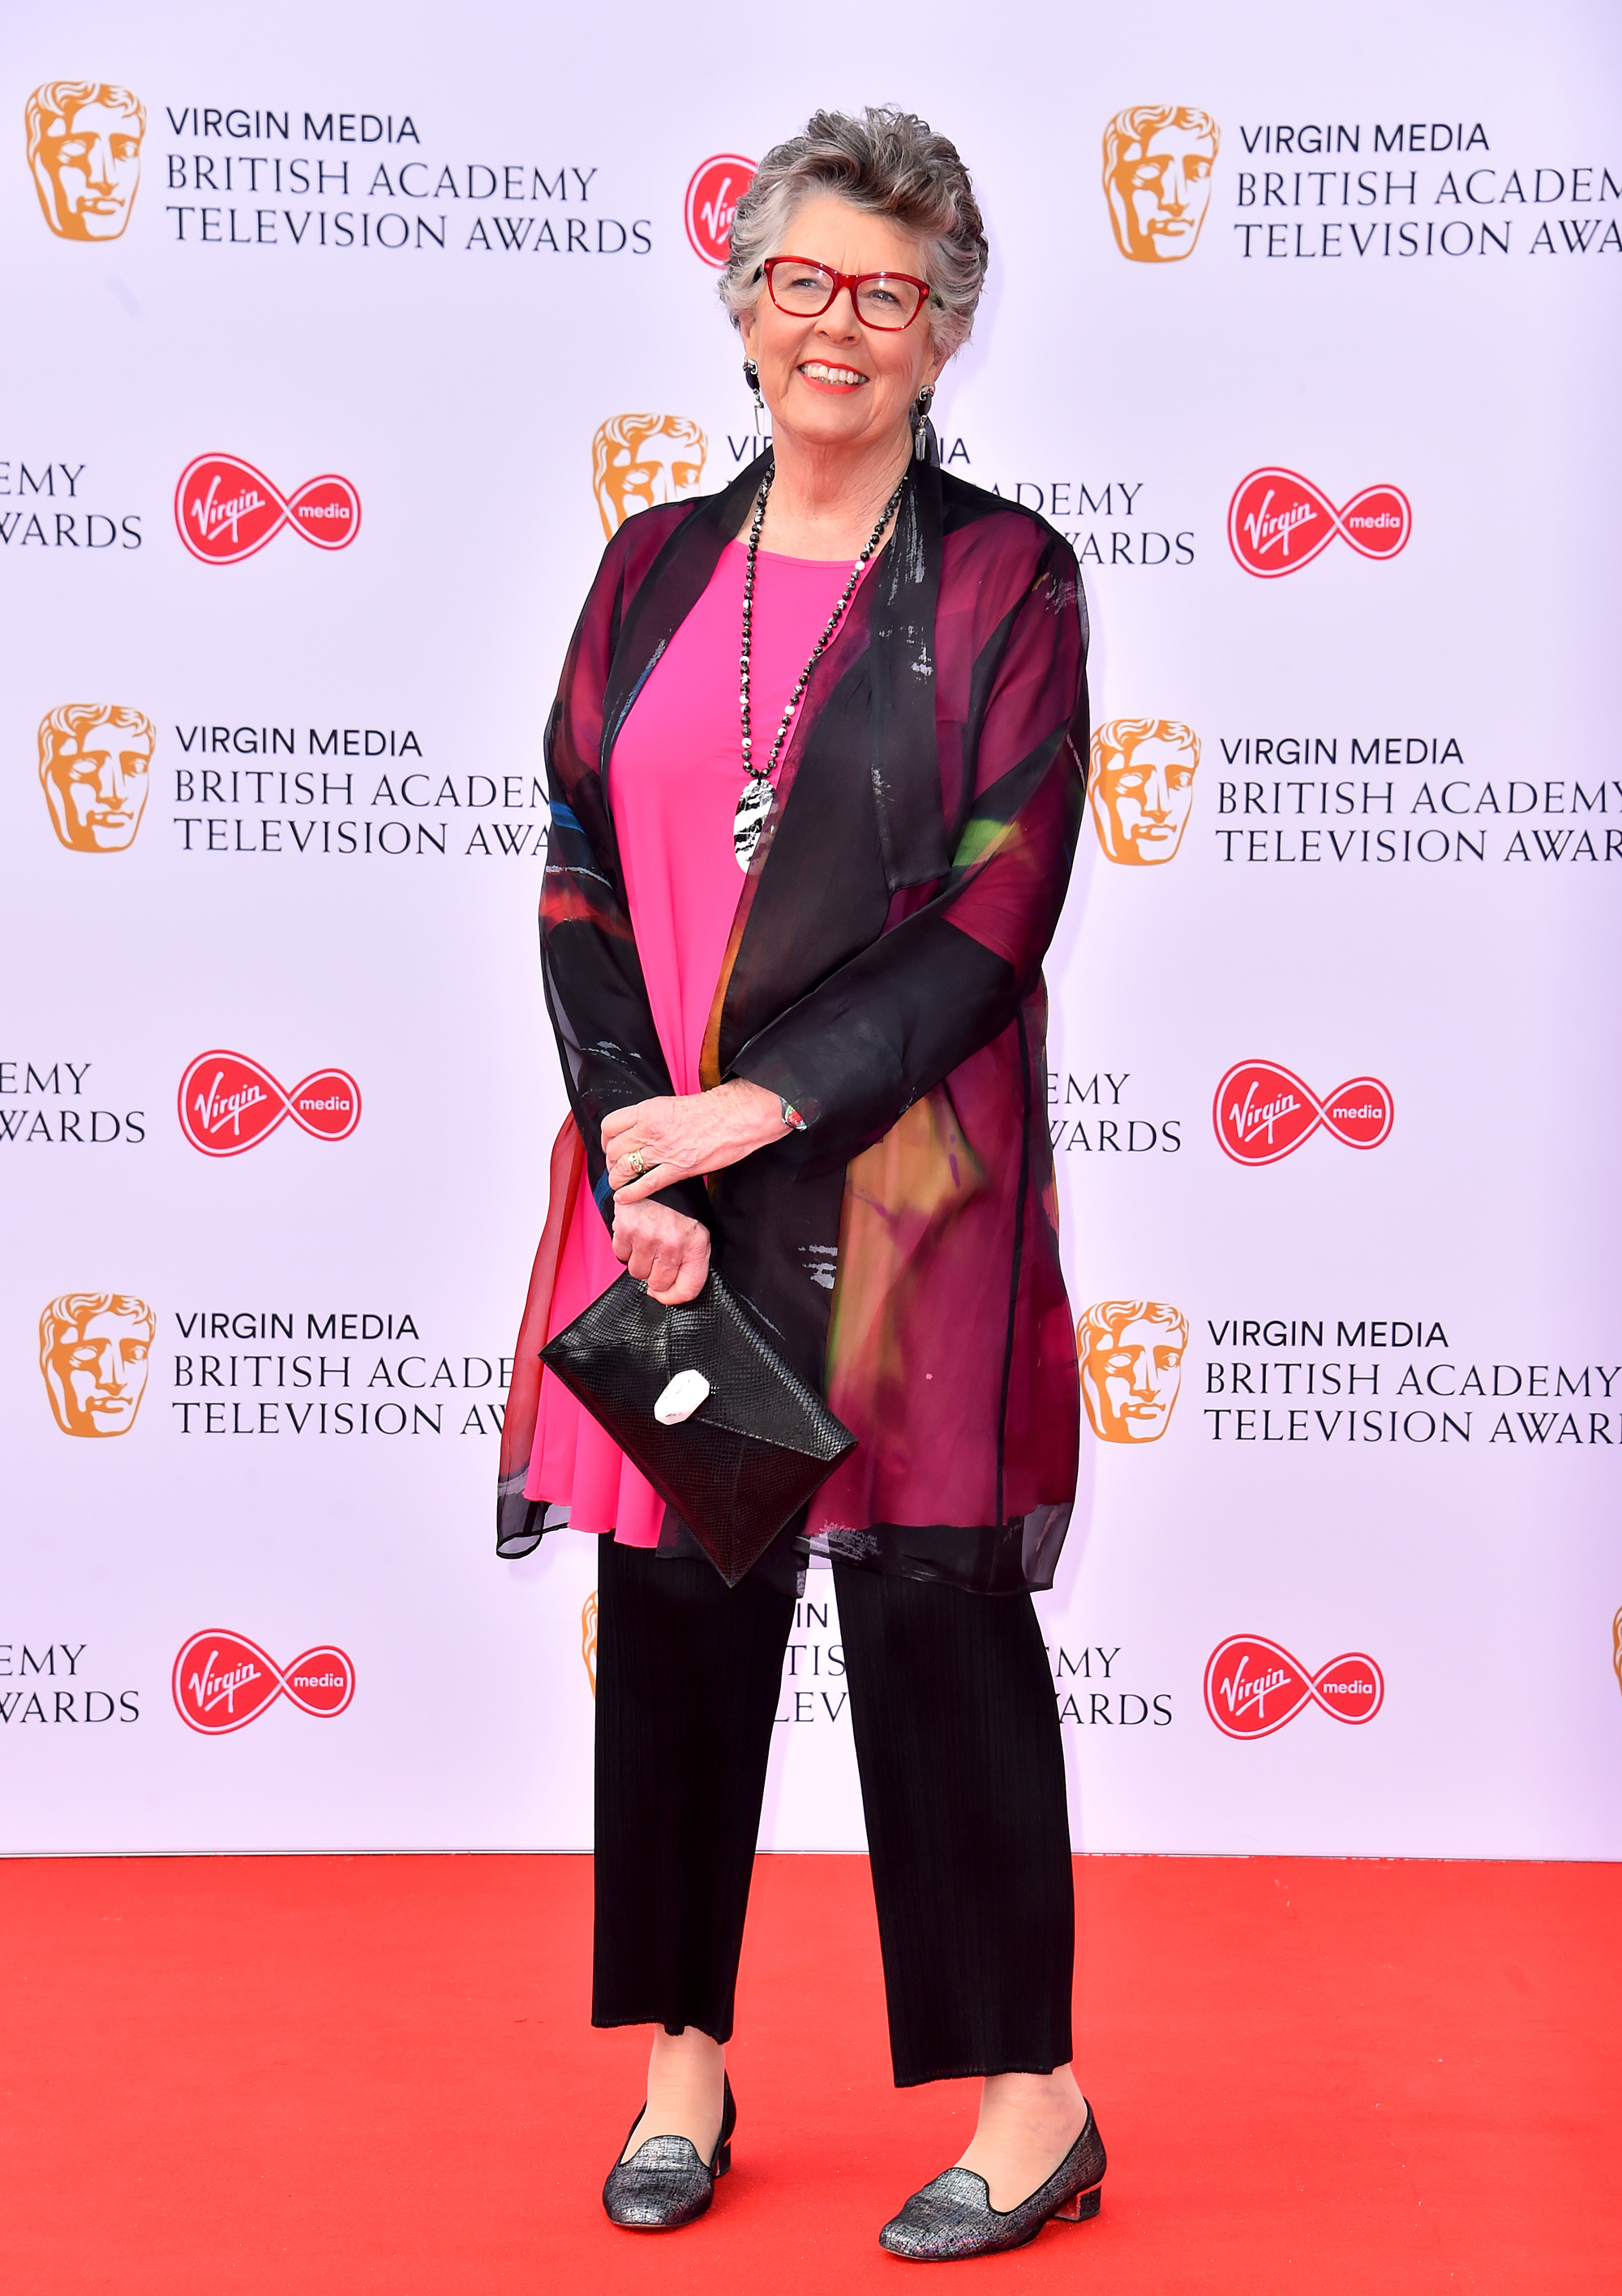 Prue Leith attending the Virgin Media BAFTA TV awards